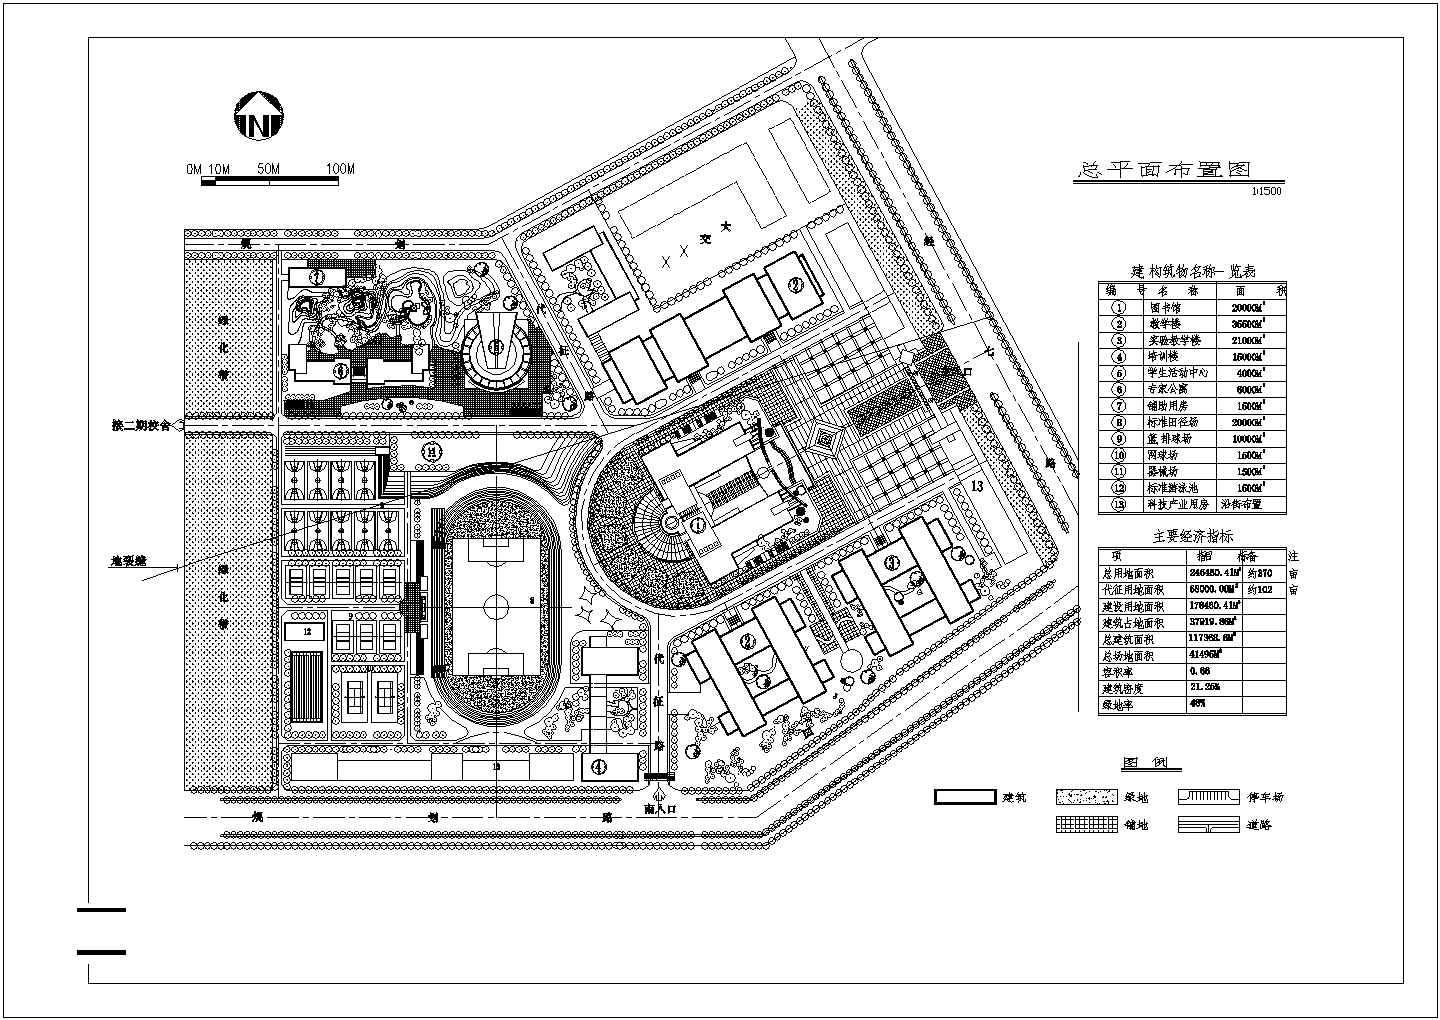 总用地面积246460.4平方米（约370亩）大学校规划总平面布置图1张 含建筑物名称一览表 主要经济指标cad施工图设计